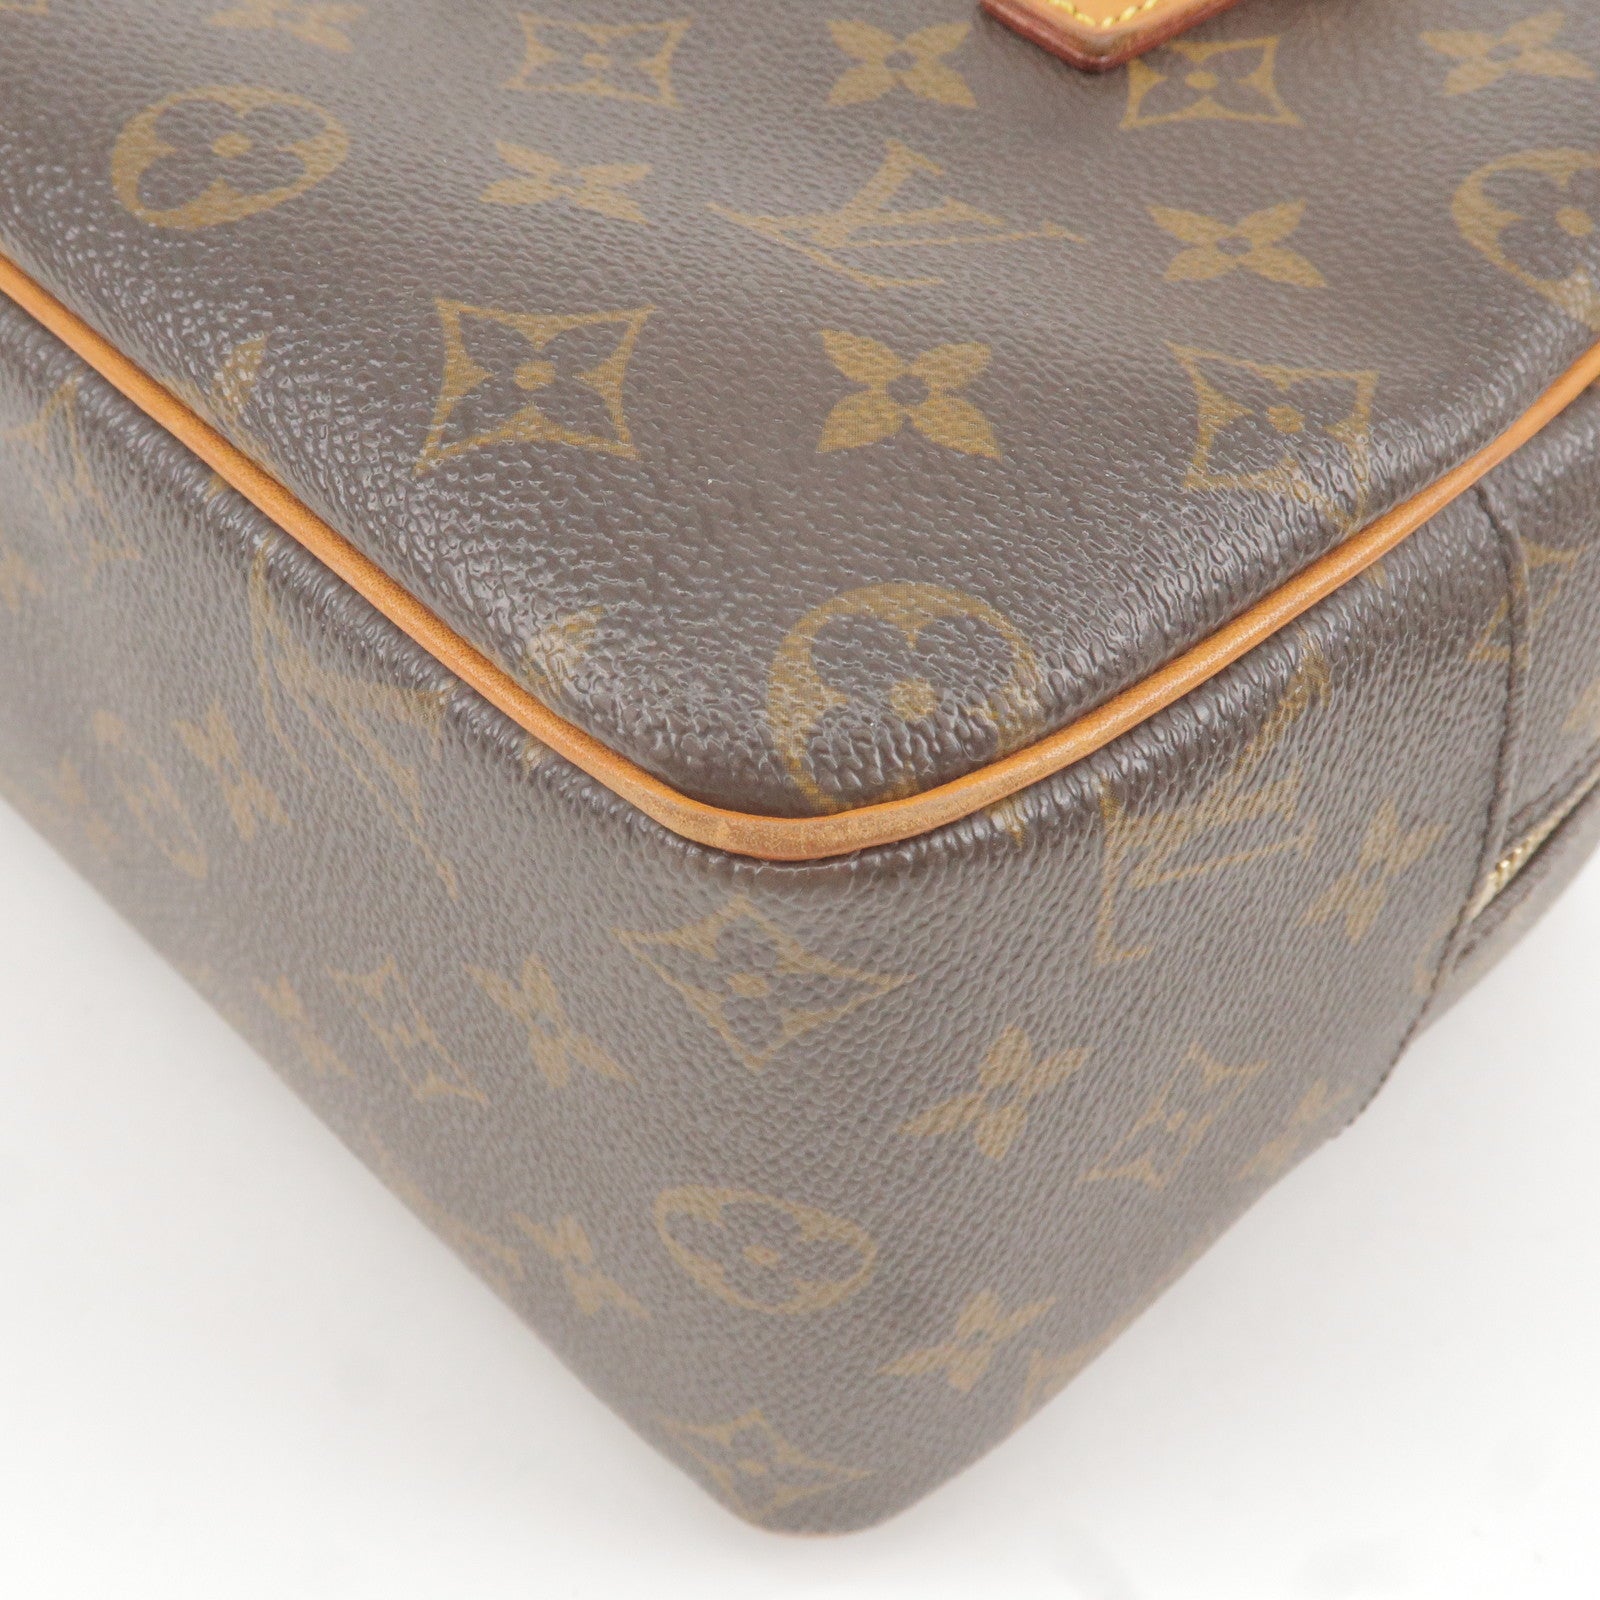 Louis Vuitton Papillon 26 Brown Canvas Handbag (Pre-Owned)